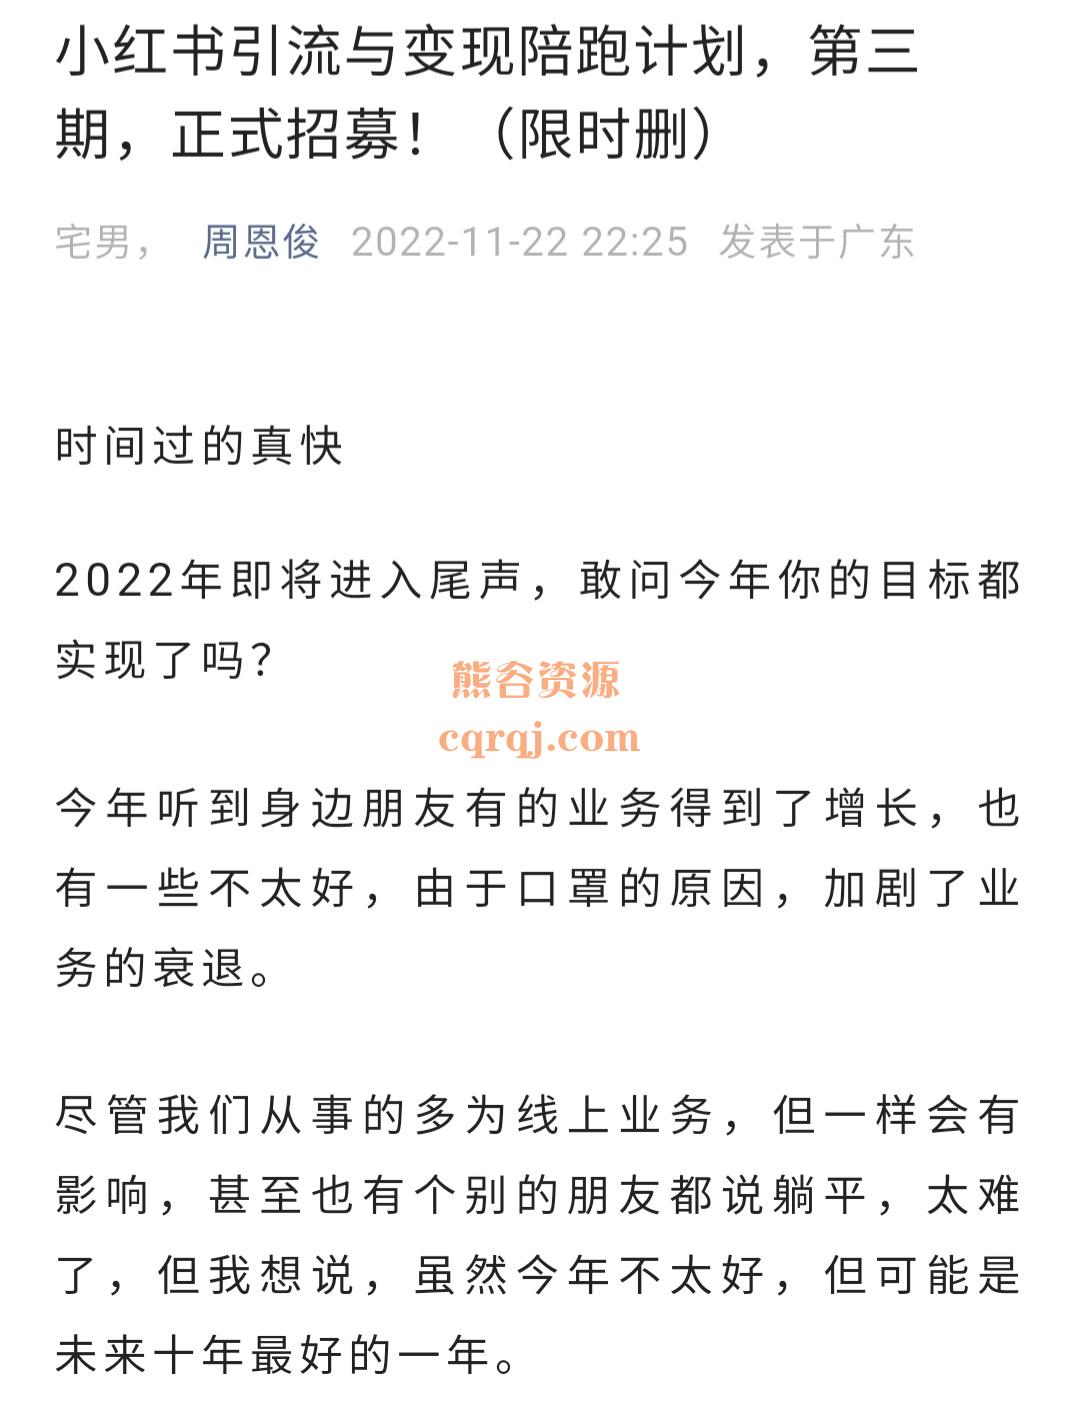 Screenshot_20221205-155537_WeChat.jpg